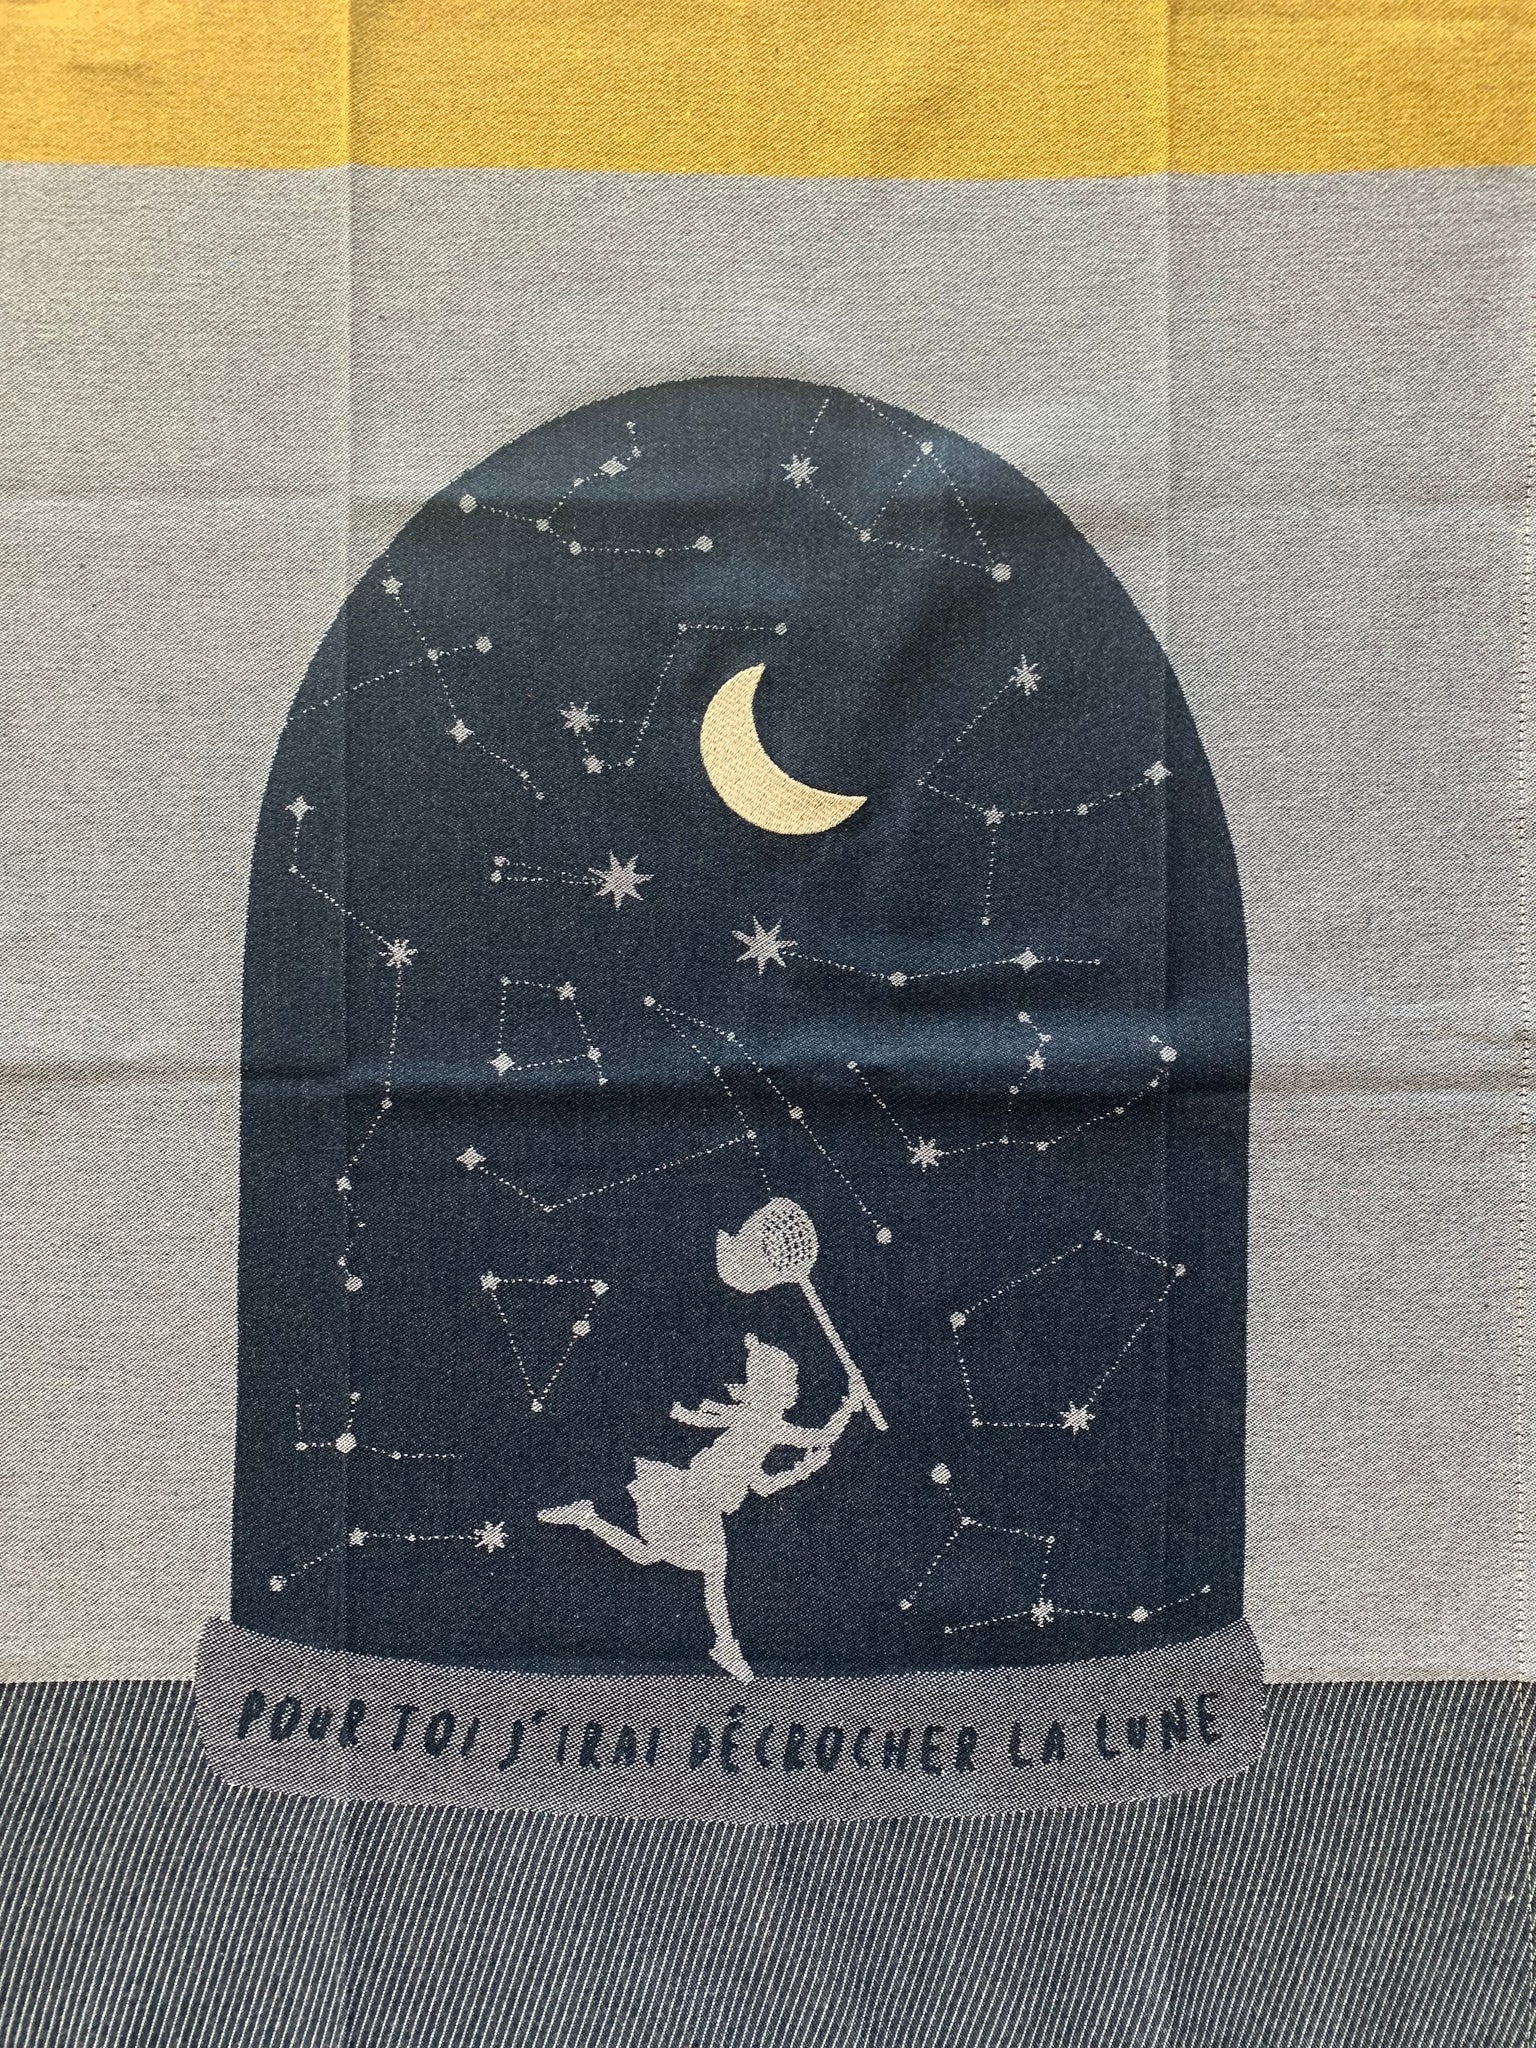 French Jacquard tea towel by Tissage Moutet "La Lune"